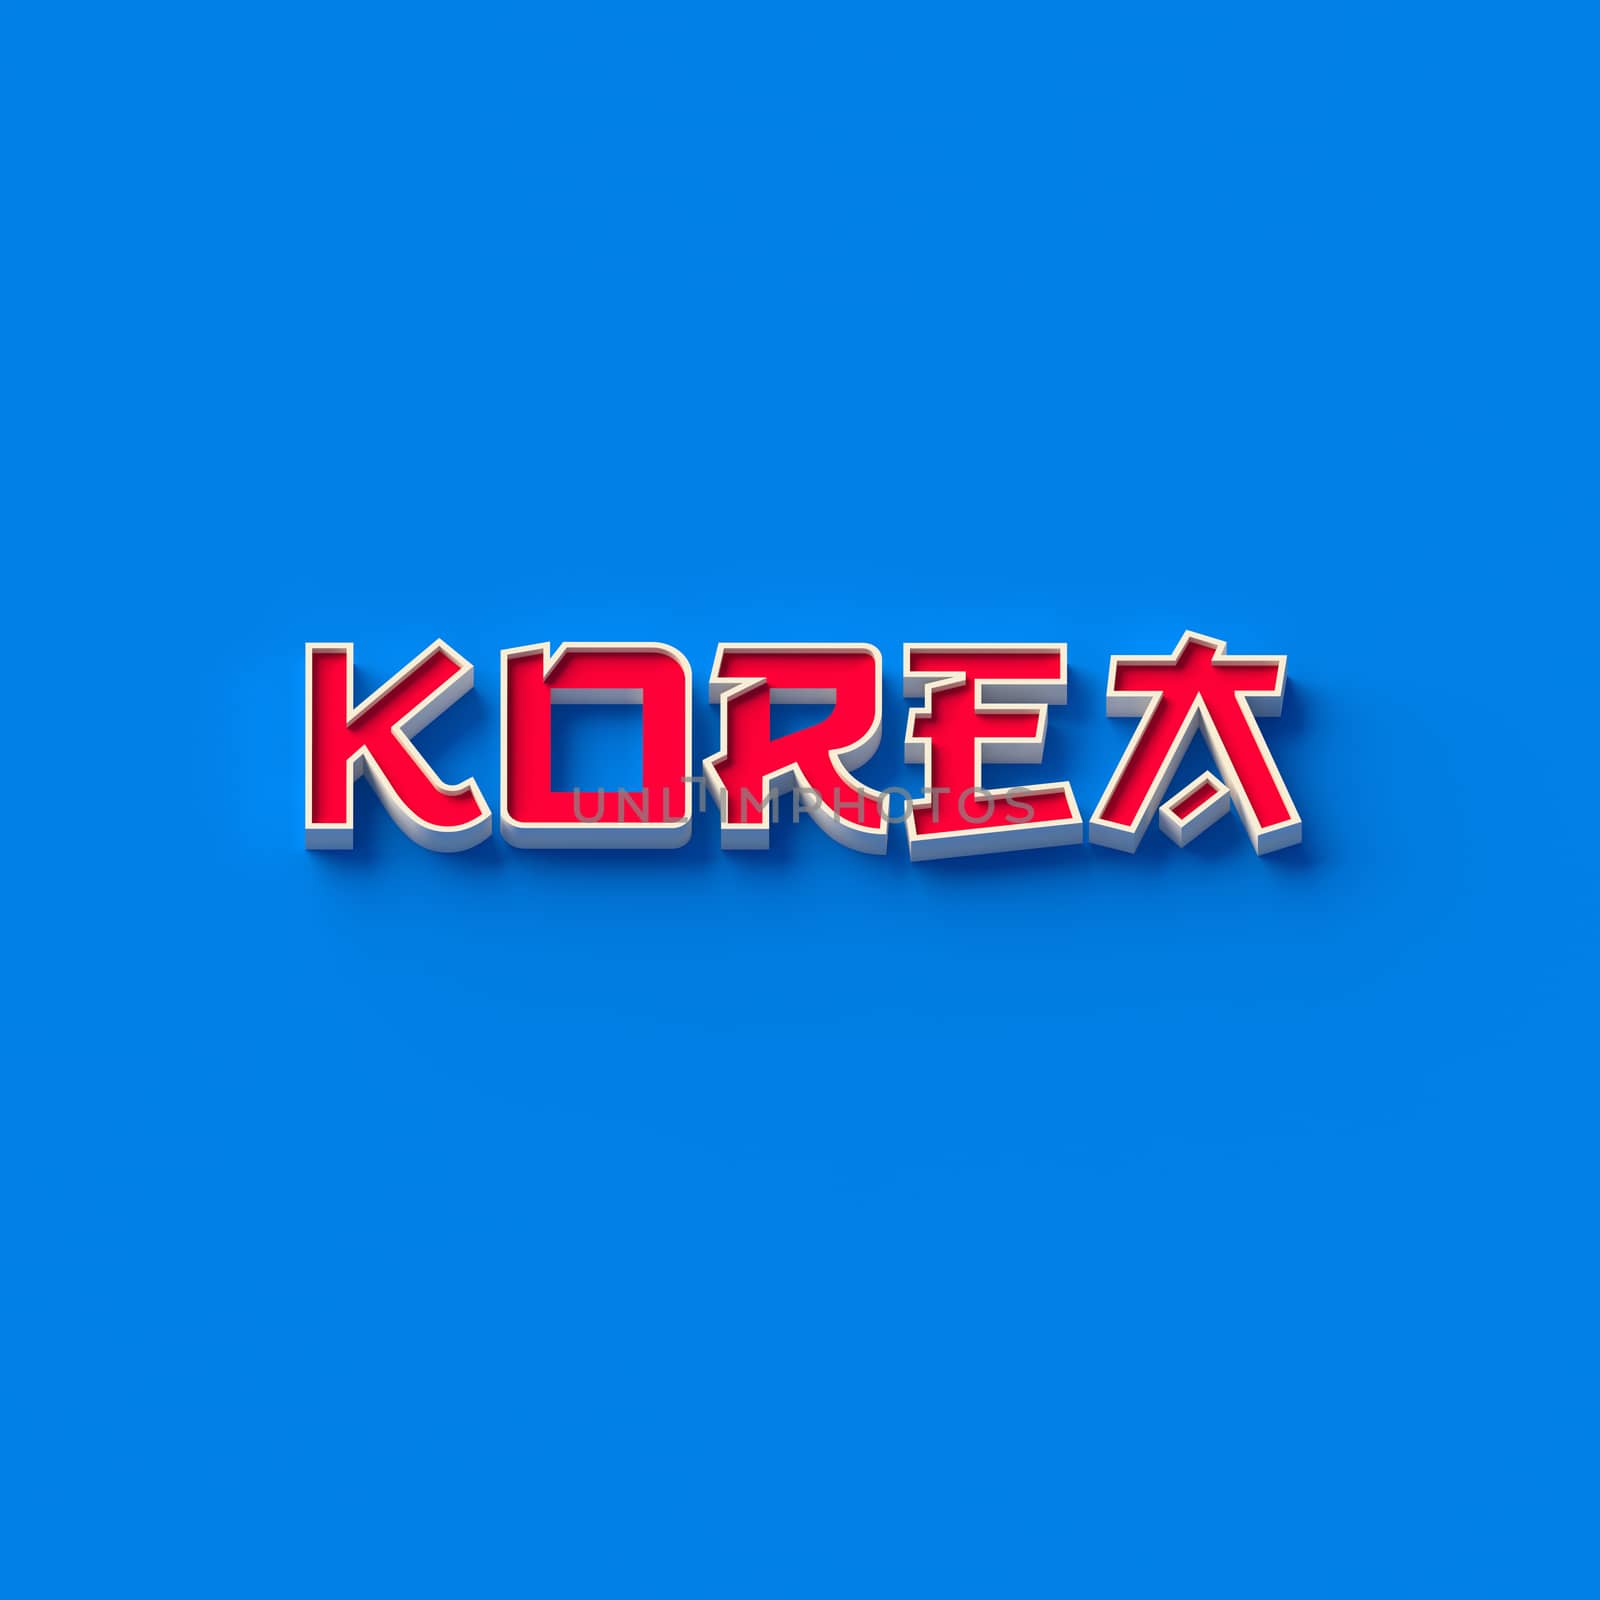 3D RENDERING WORDS "KOREA" by PrettyTG